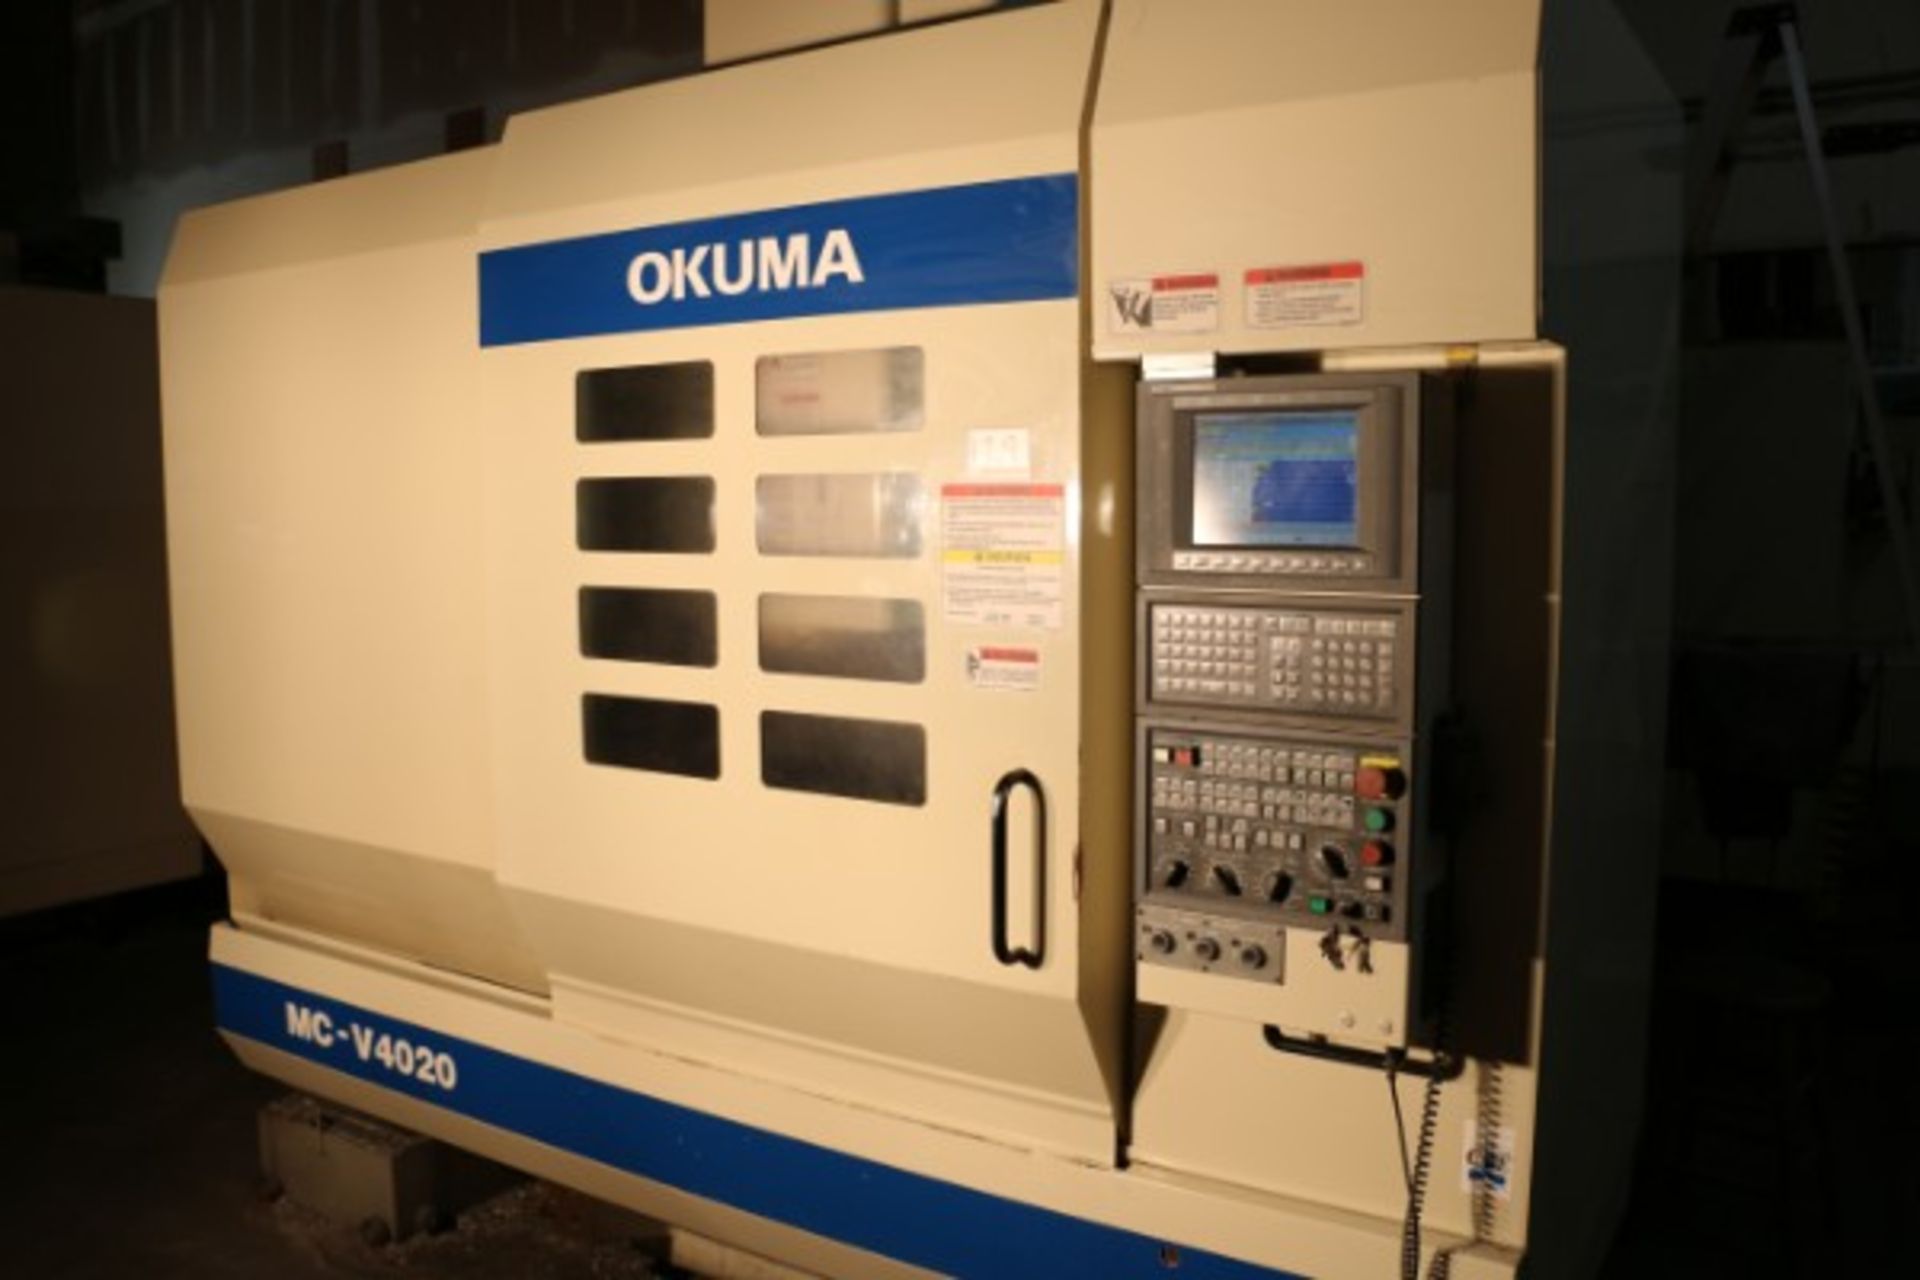 OKUMA MODEL MC-V4020, OKUMA OSP-E100M CONTROL, S/N 0815, 14,744 Cutting Hours, New 2006